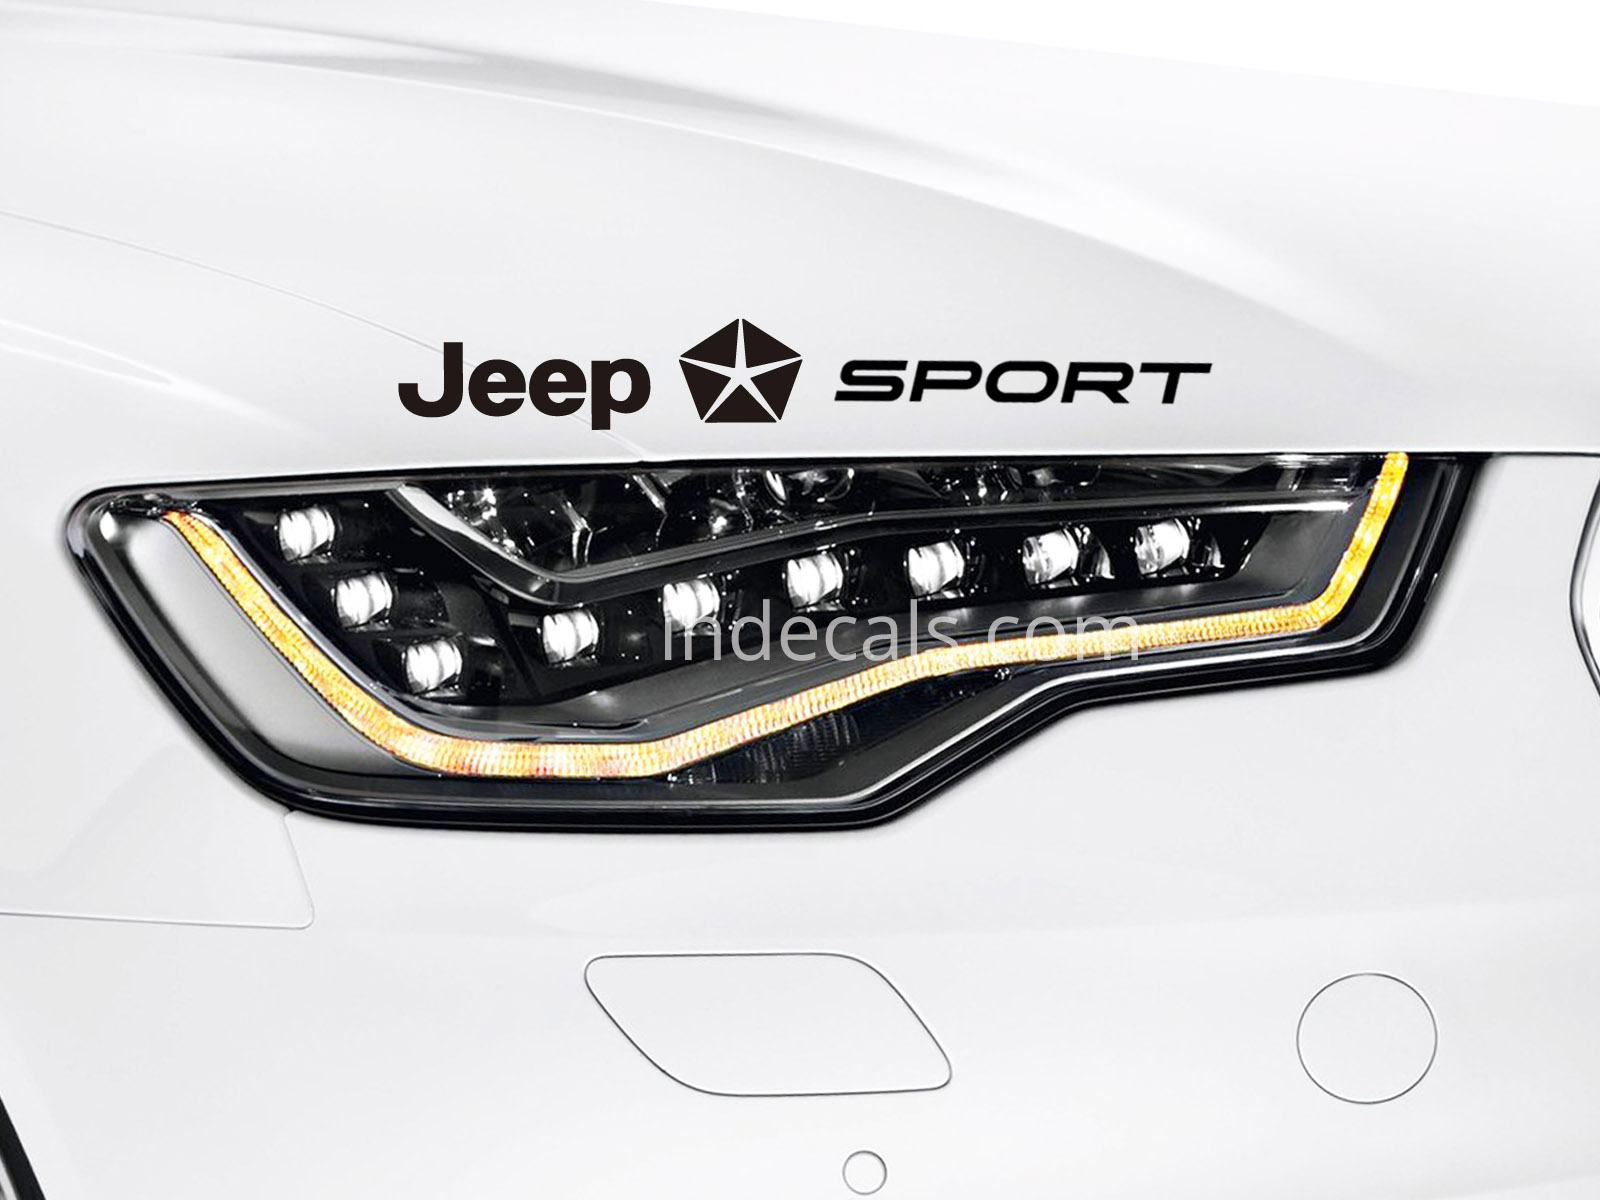 1 x Jeep Sport Sticker - Black